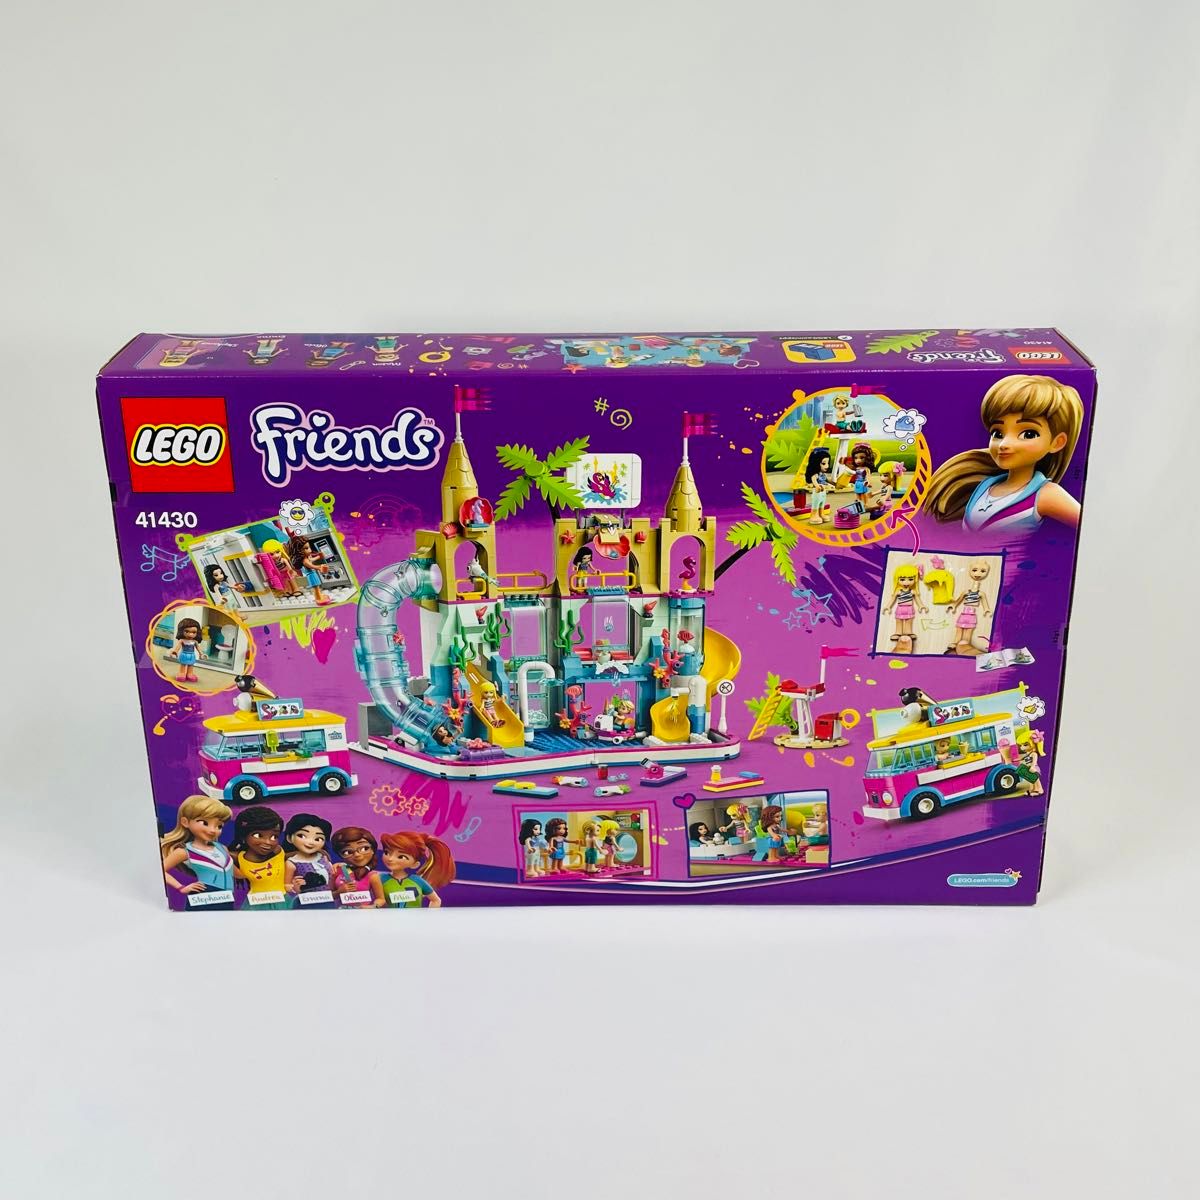 【新品未開封】LEGO レゴ フレンズのわくわくサマーウォーターパーク 41430【廃盤】